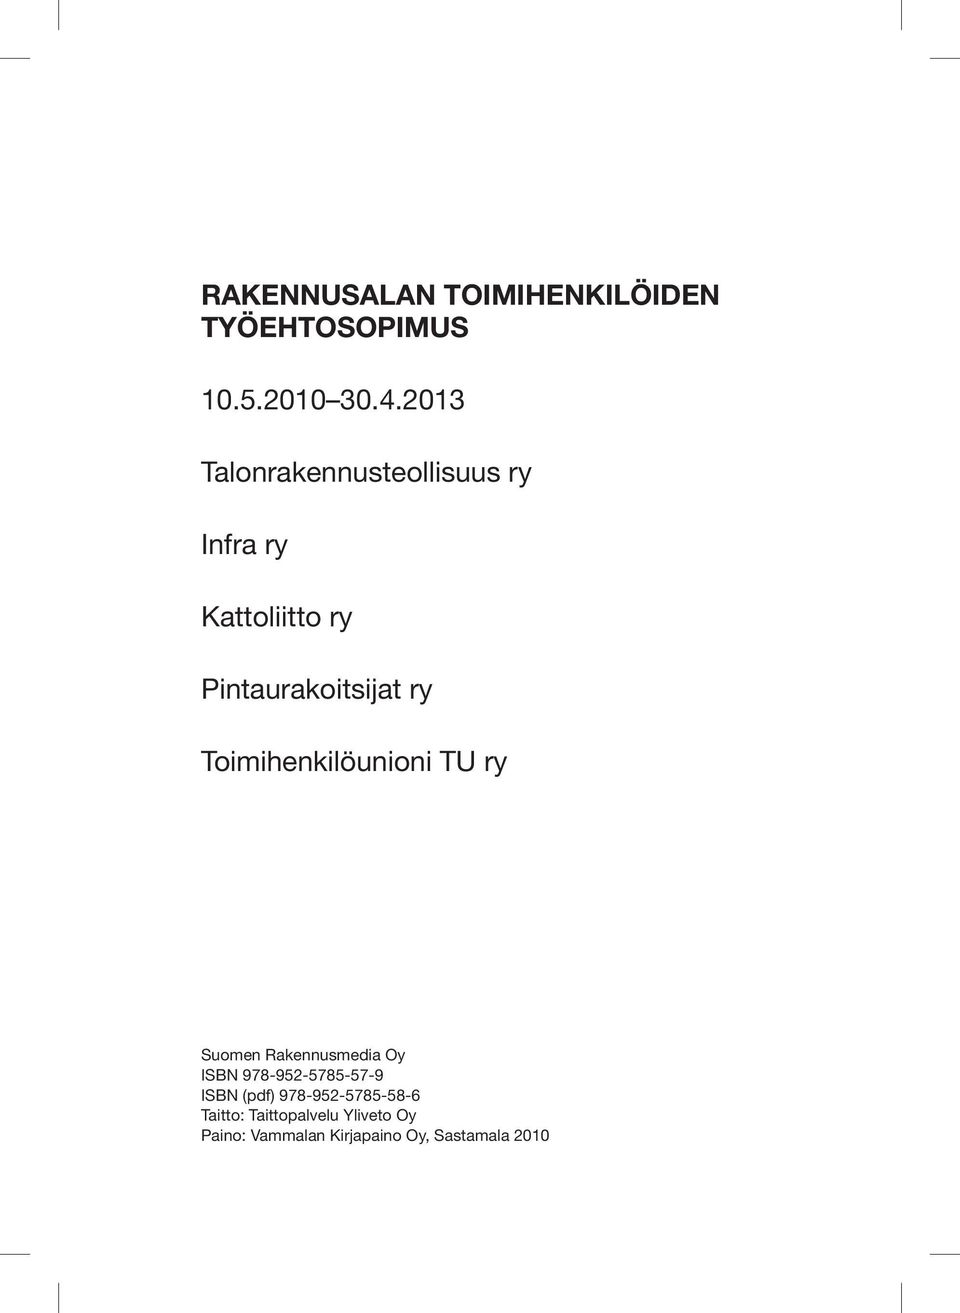 Toimihenkilöunioni TU ry Suomen Rakennusmedia Oy ISBN 978-952-5785-57-9 ISBN